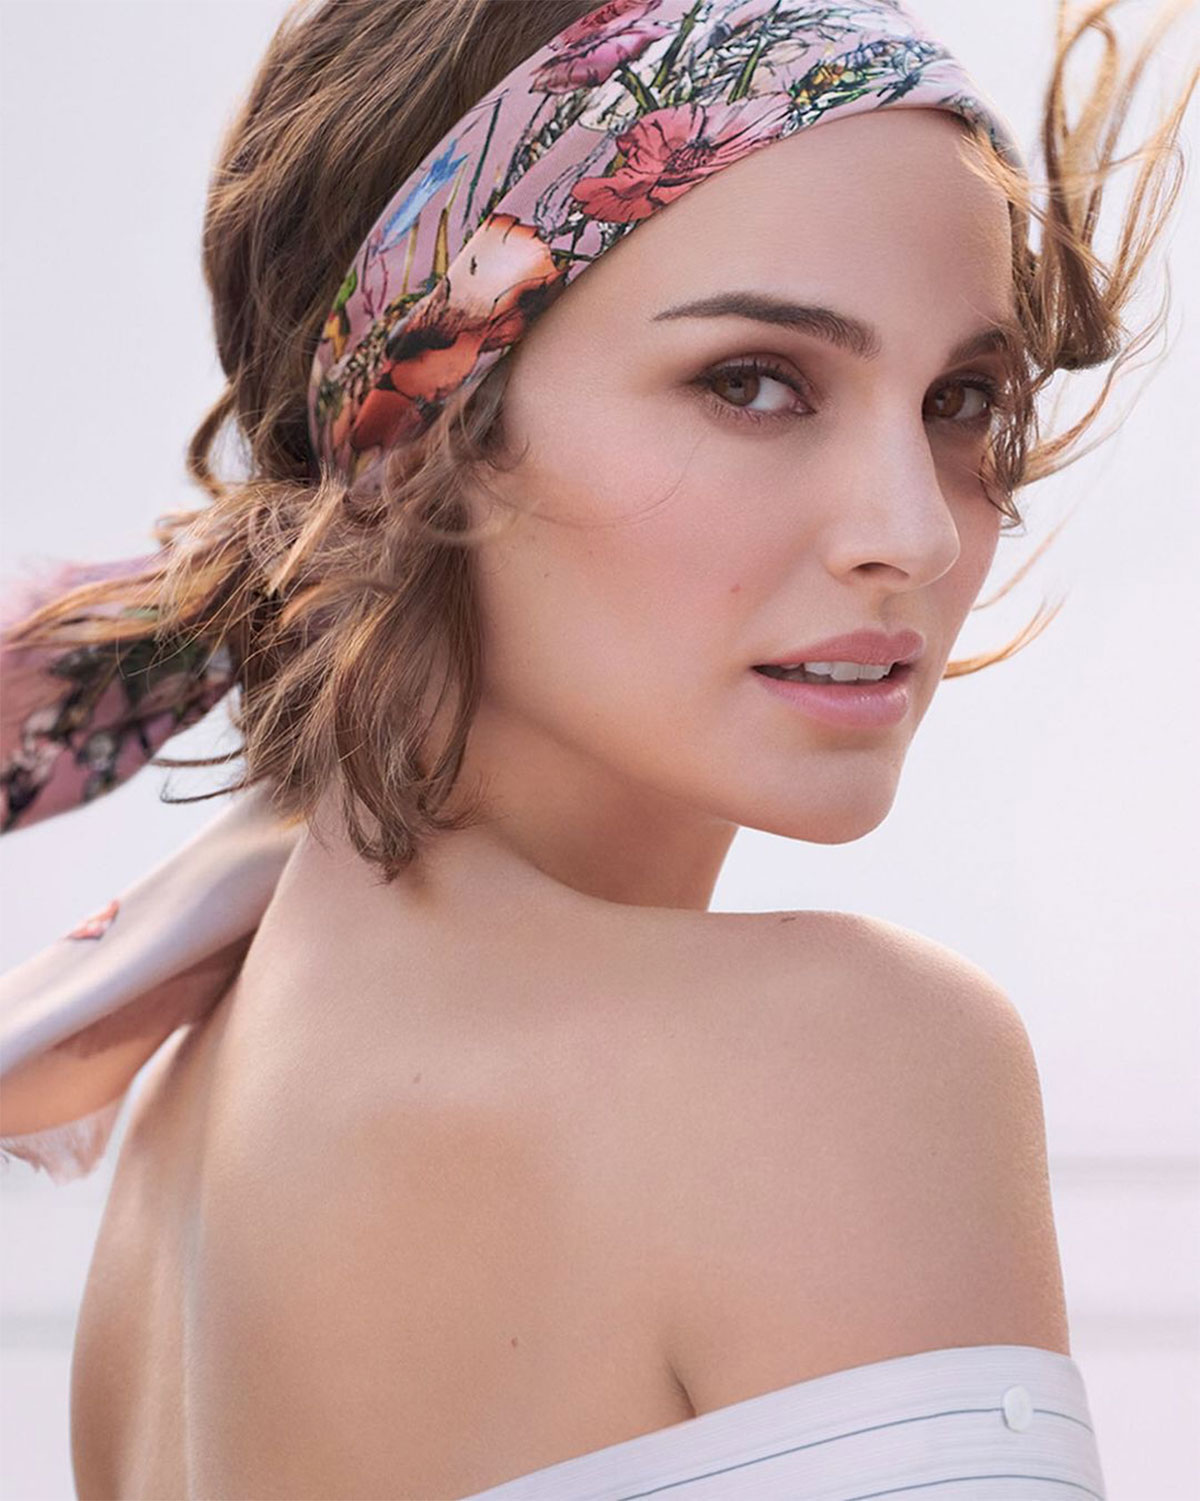 New Miss Dior Eau de Parfum campaign with Natalie Portman  LVMH